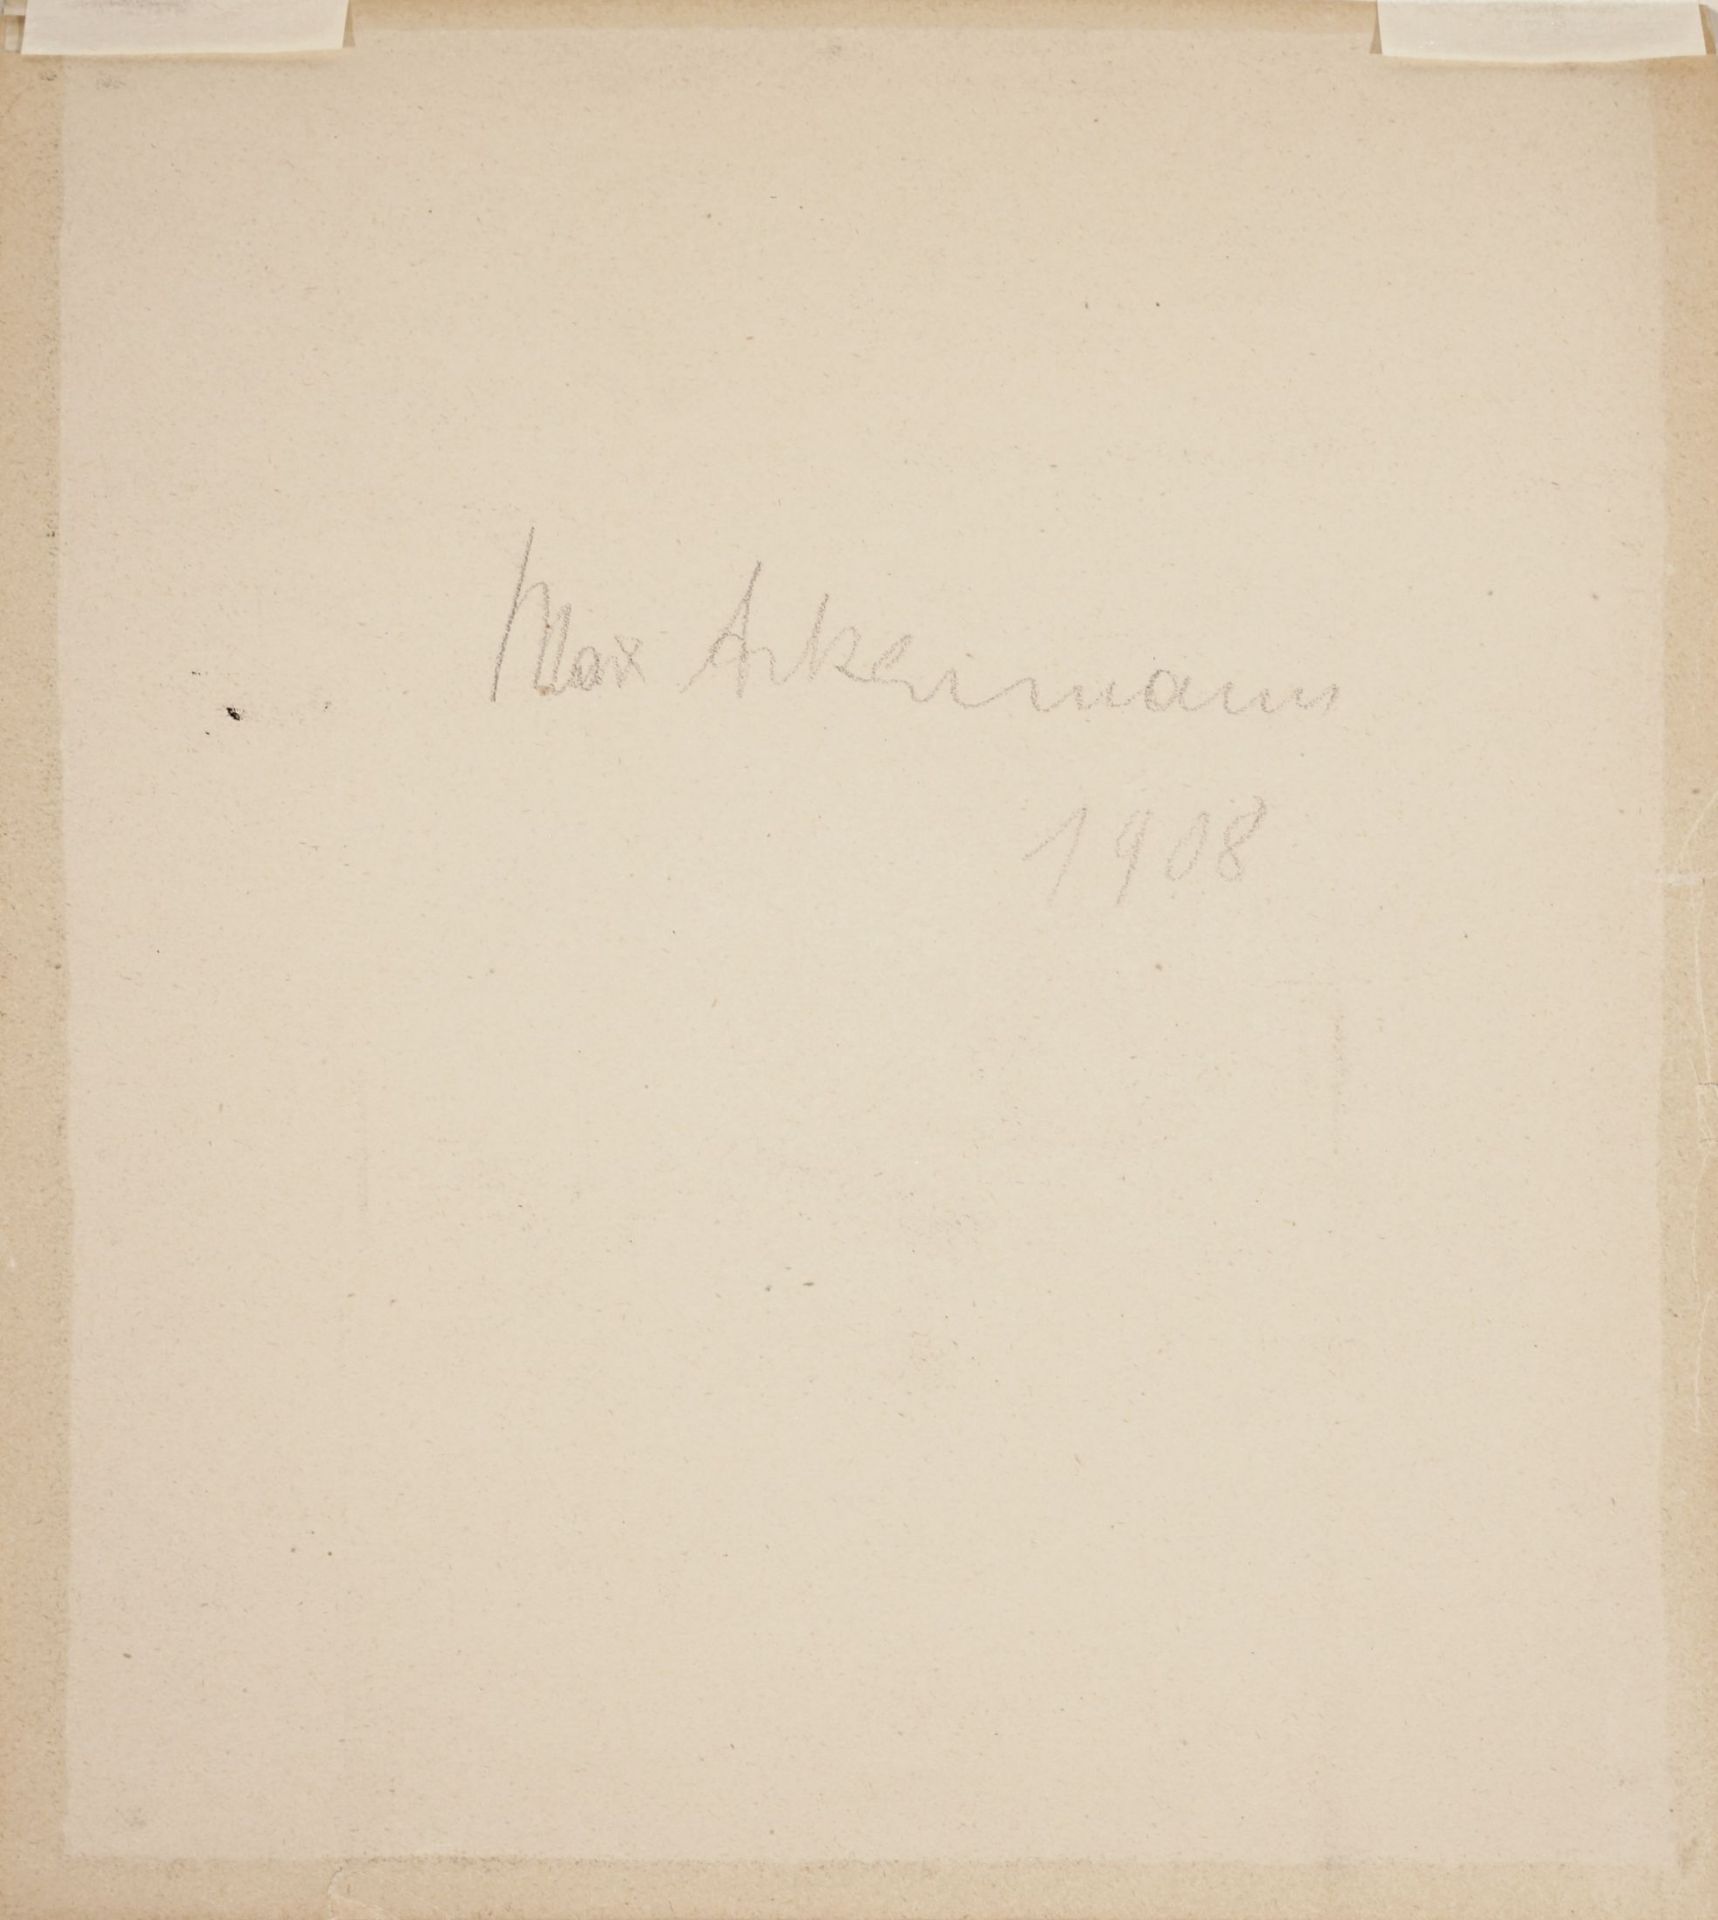 Max Ackermann, Drei Akte in Arkadien. 1908. - Bild 3 aus 3